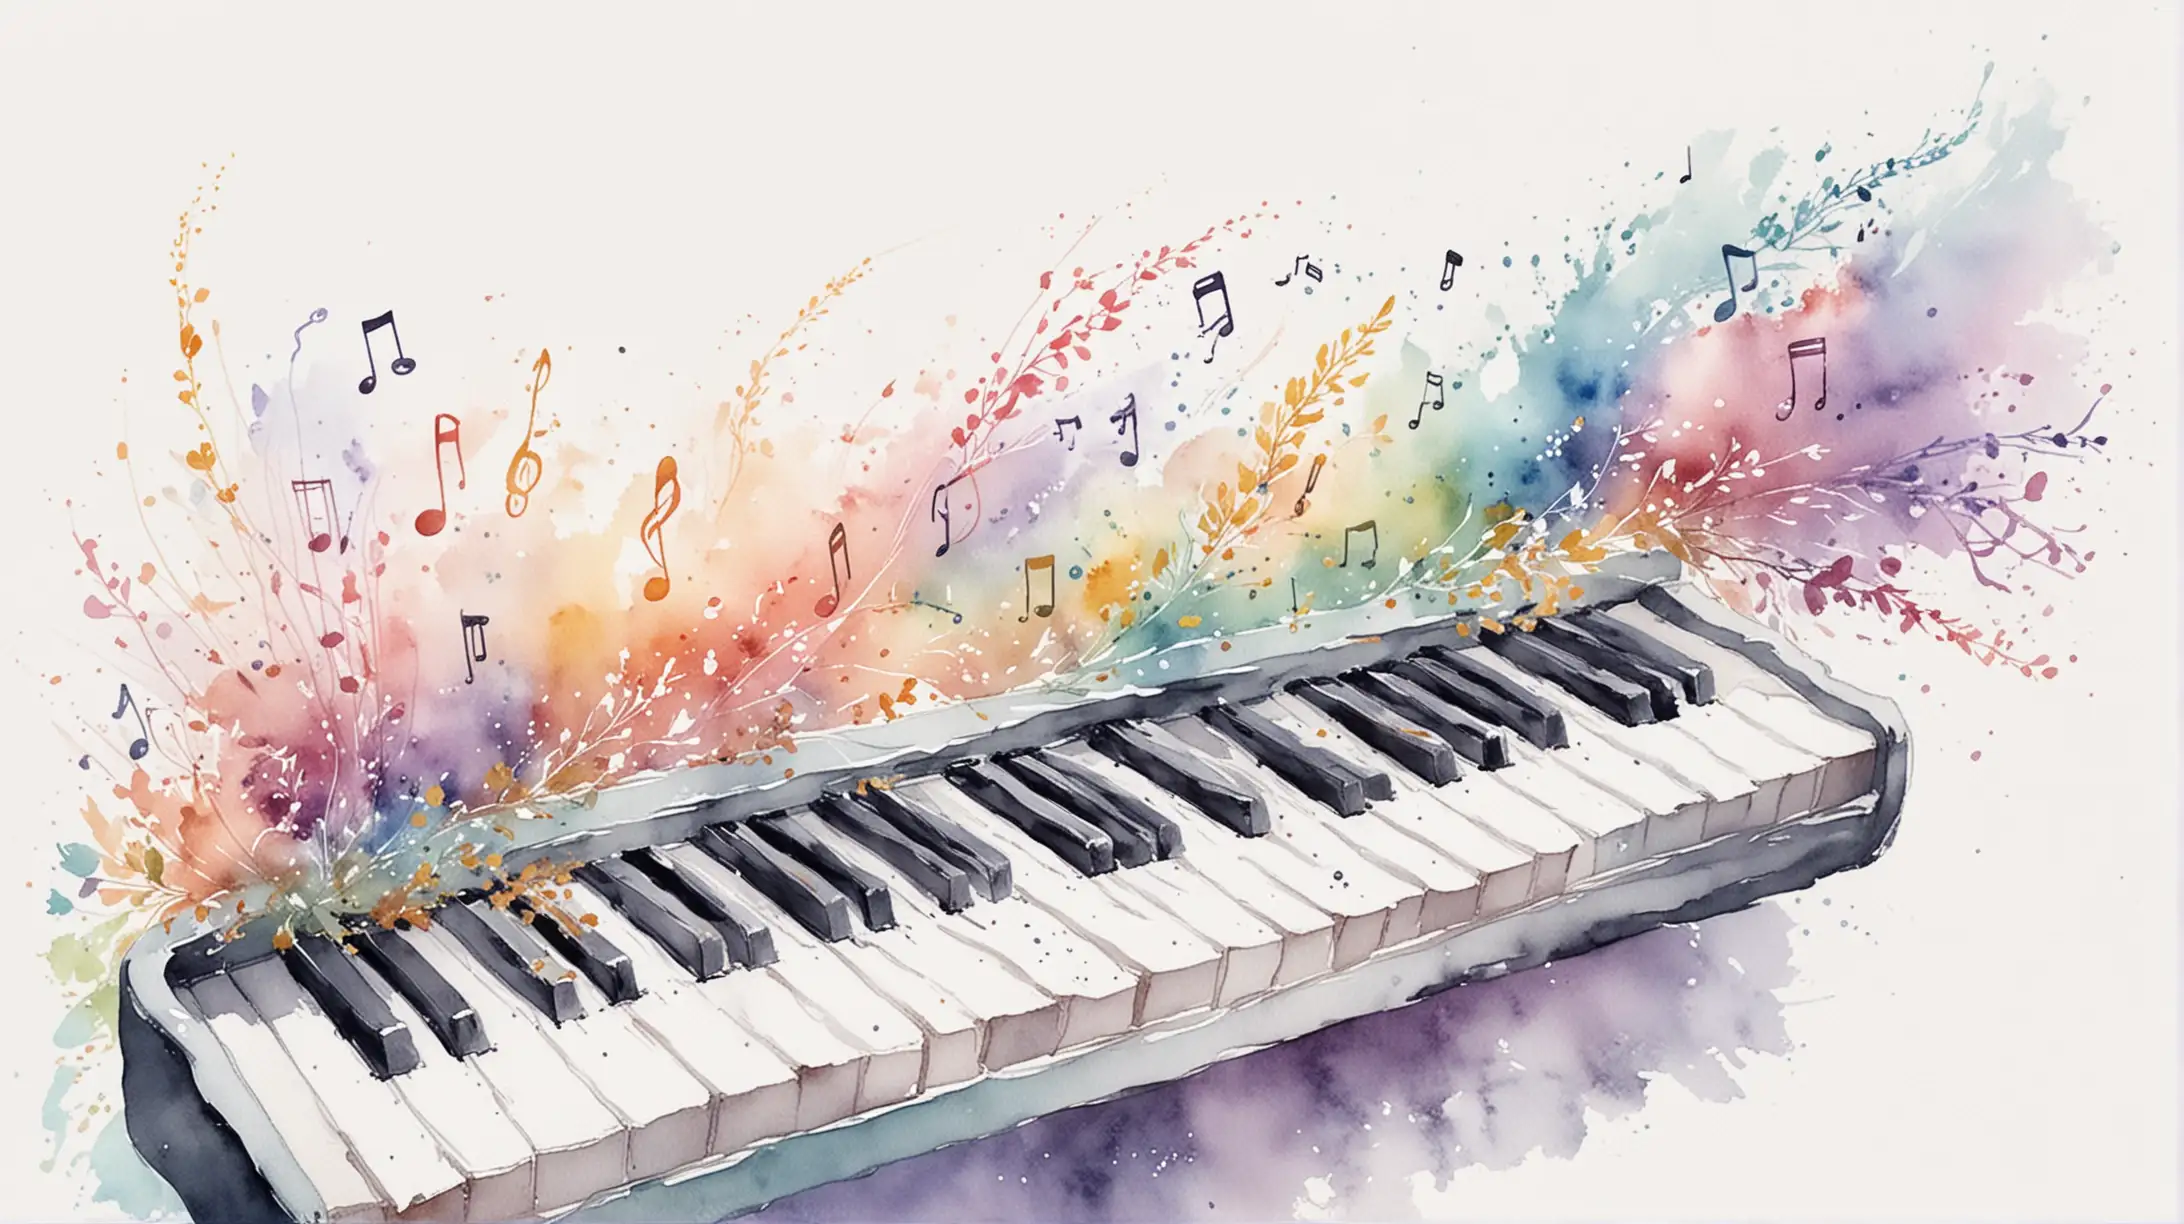 на белом фоне нарисовано акварелью,  красивые нежные пастельные оттенки, вертикально музыкальные клавиши, нотный стан, музыка, полет, ветер, фентези, вдохновение,  мечта, весна